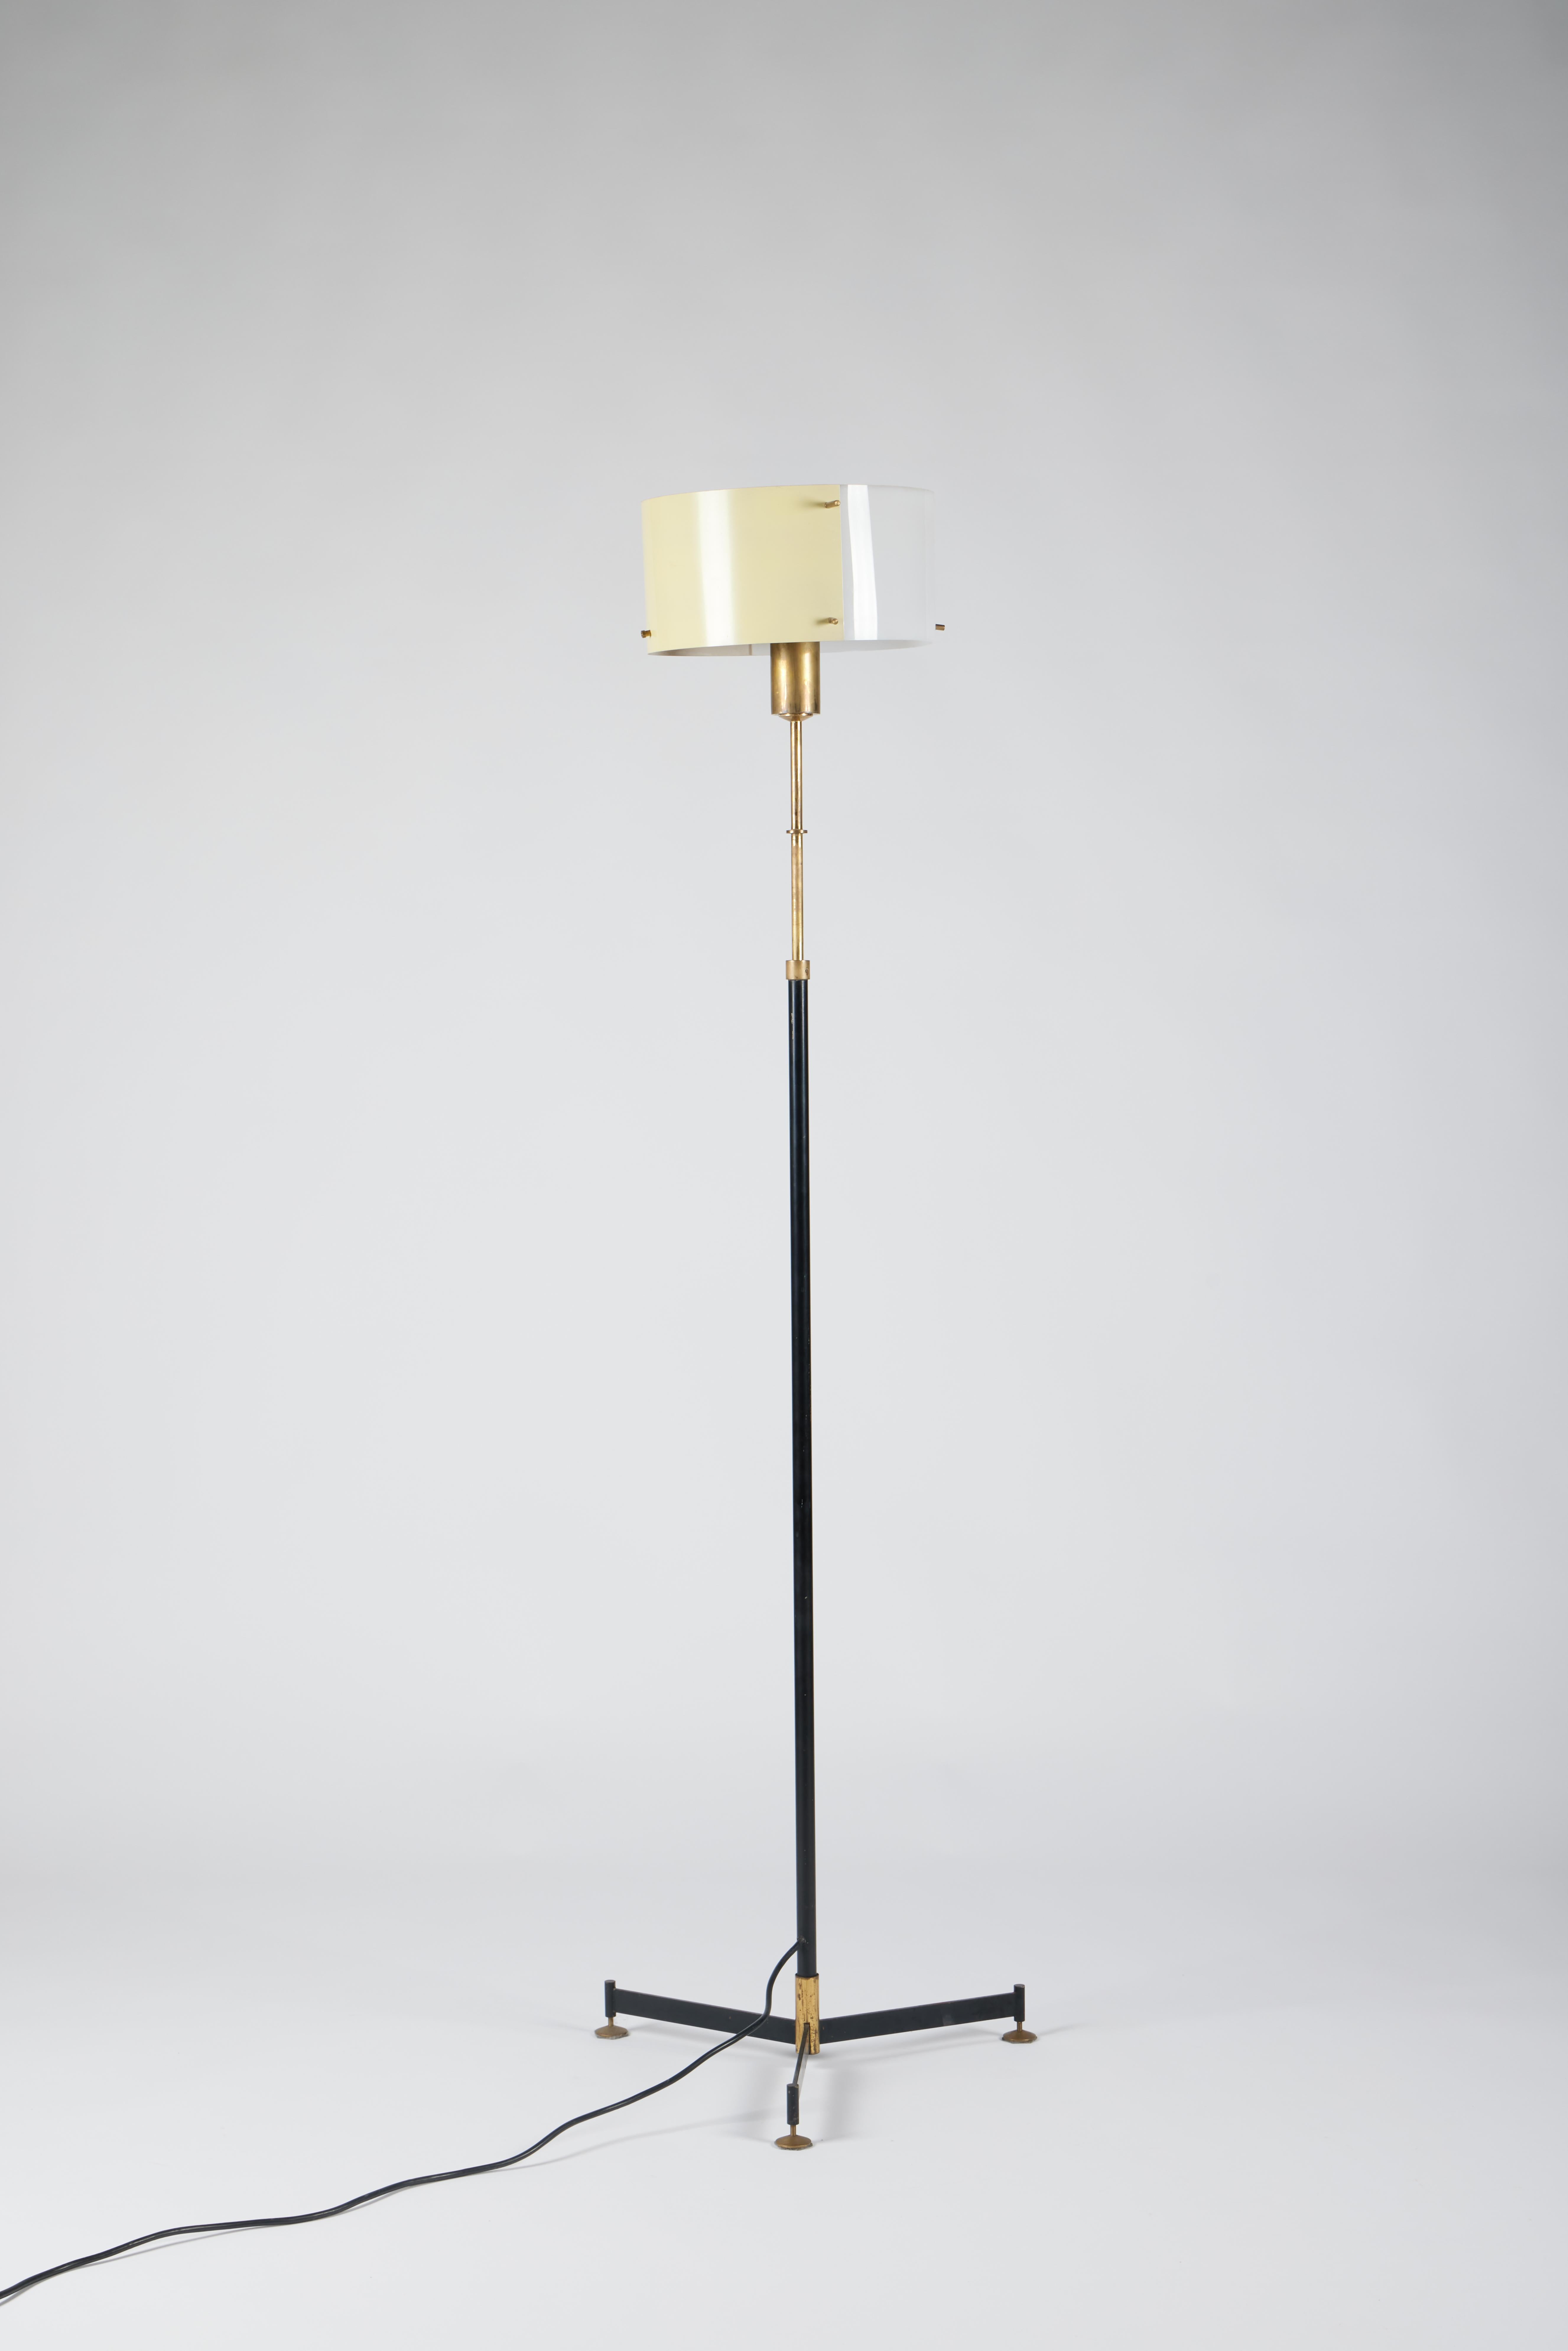 Lampadaire moderne italien du milieu du siècle à hauteur réglable par Stilnovo, années 1950

Cette lampe, réglable en hauteur, pourrait être une excellente pièce, avec sa lumière chaleureuse, à placer dans votre salon ou votre bureau pour meubler et